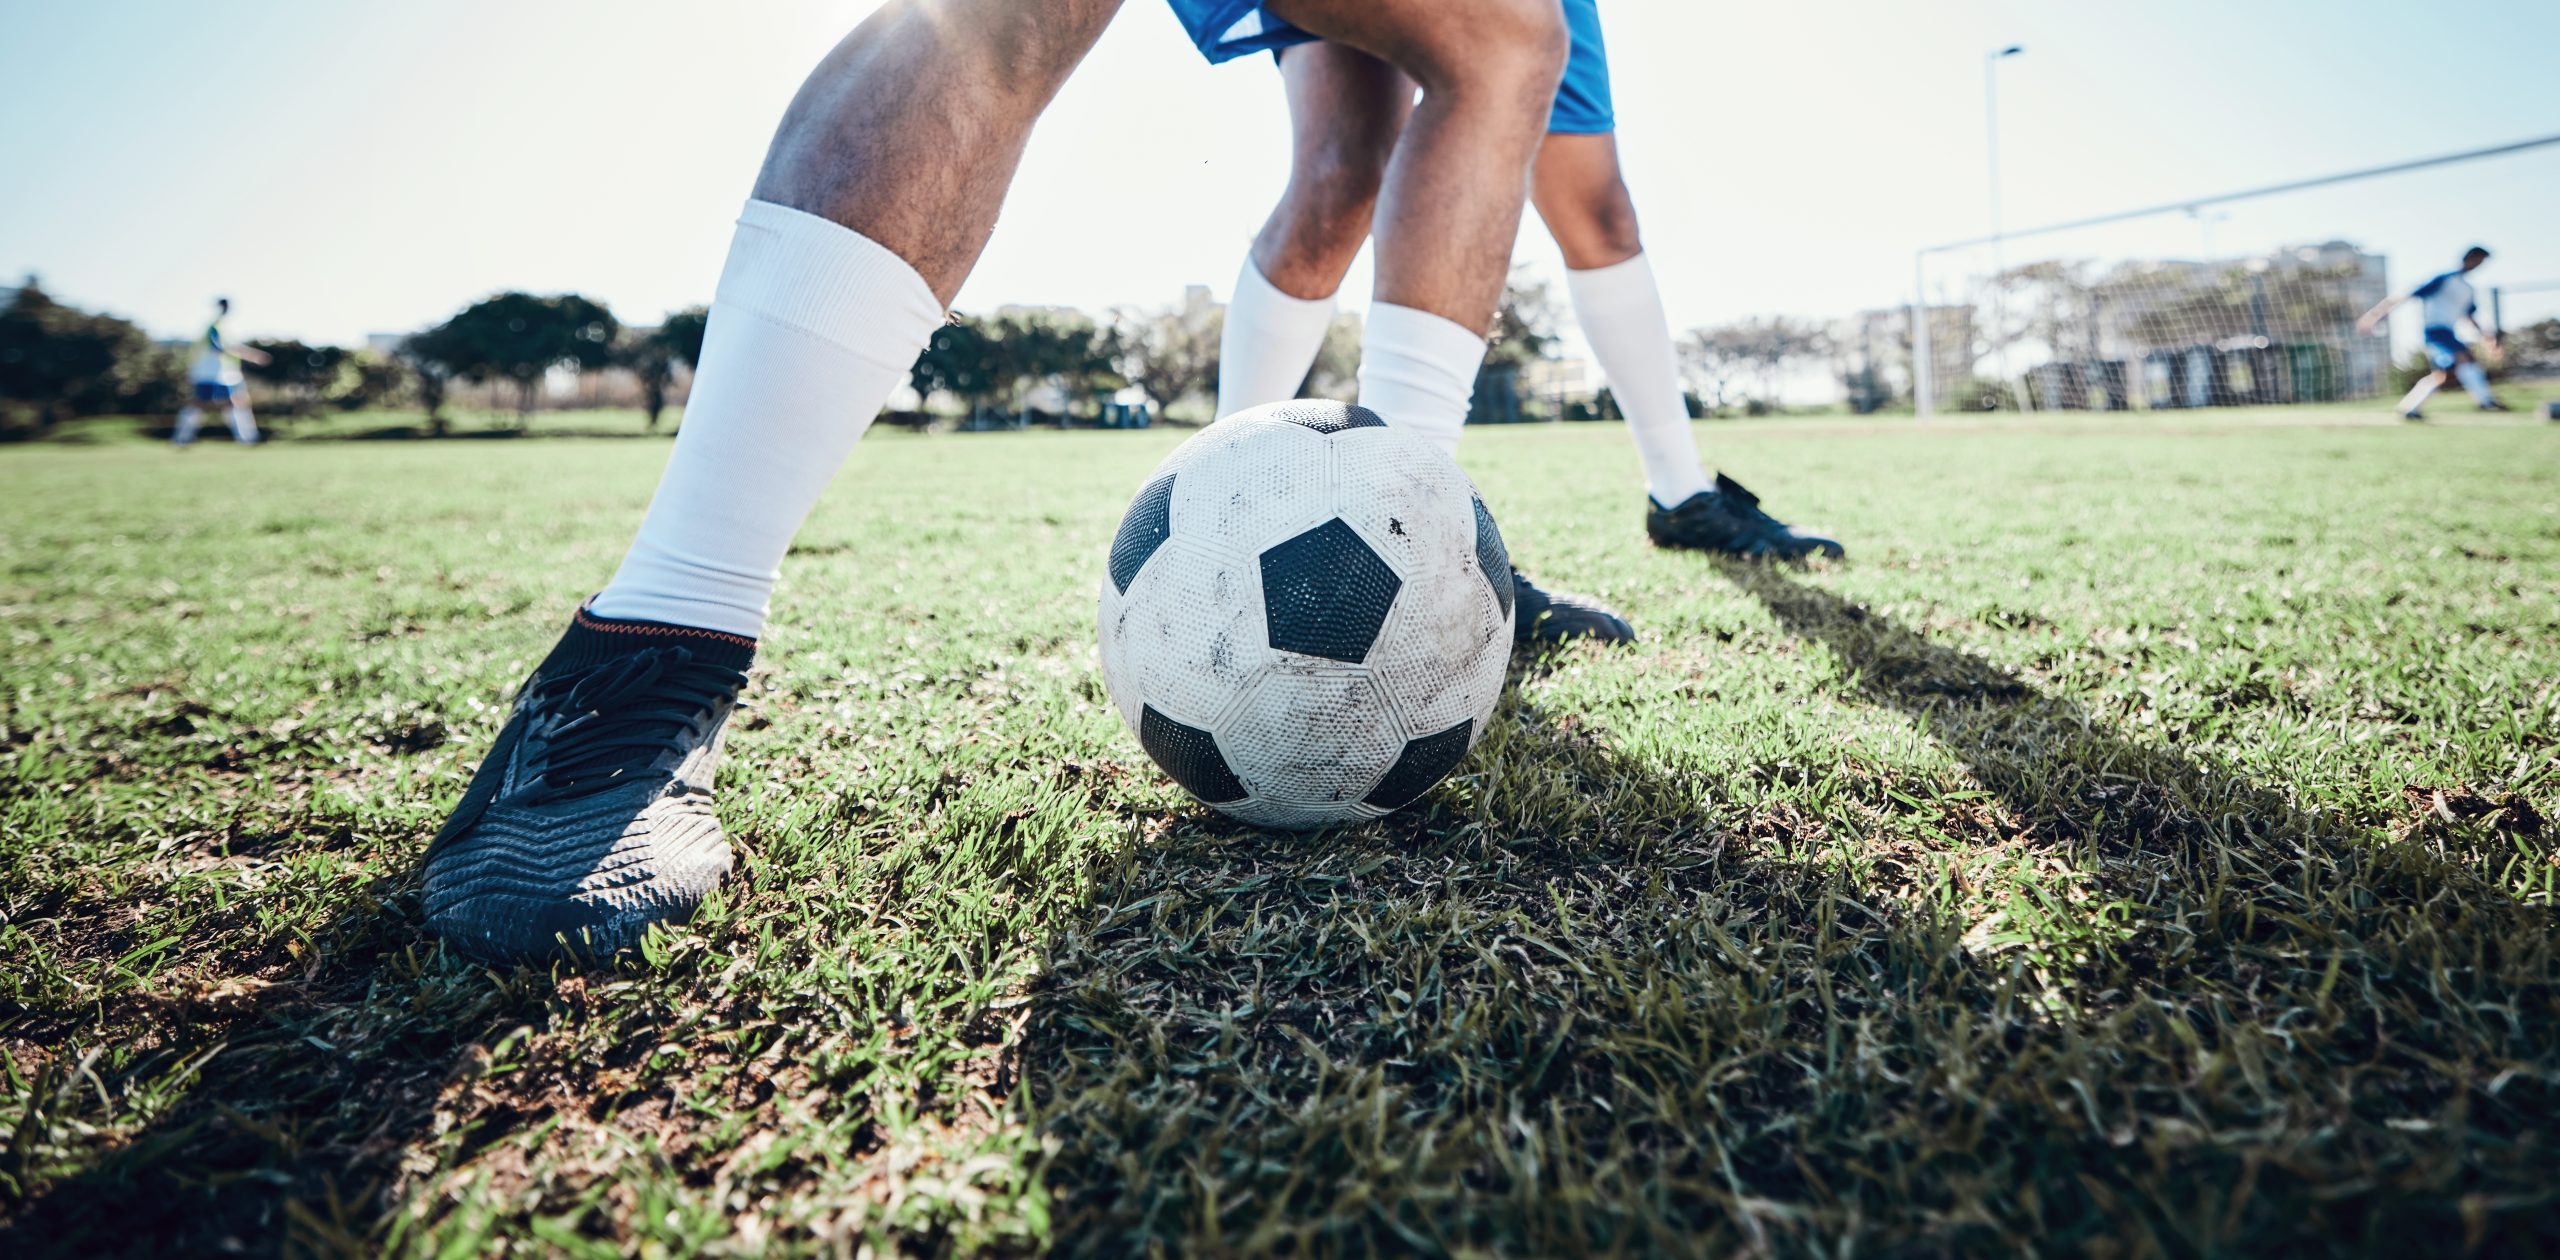 ¿Cómo prevenir lesiones jugando al fútbol?